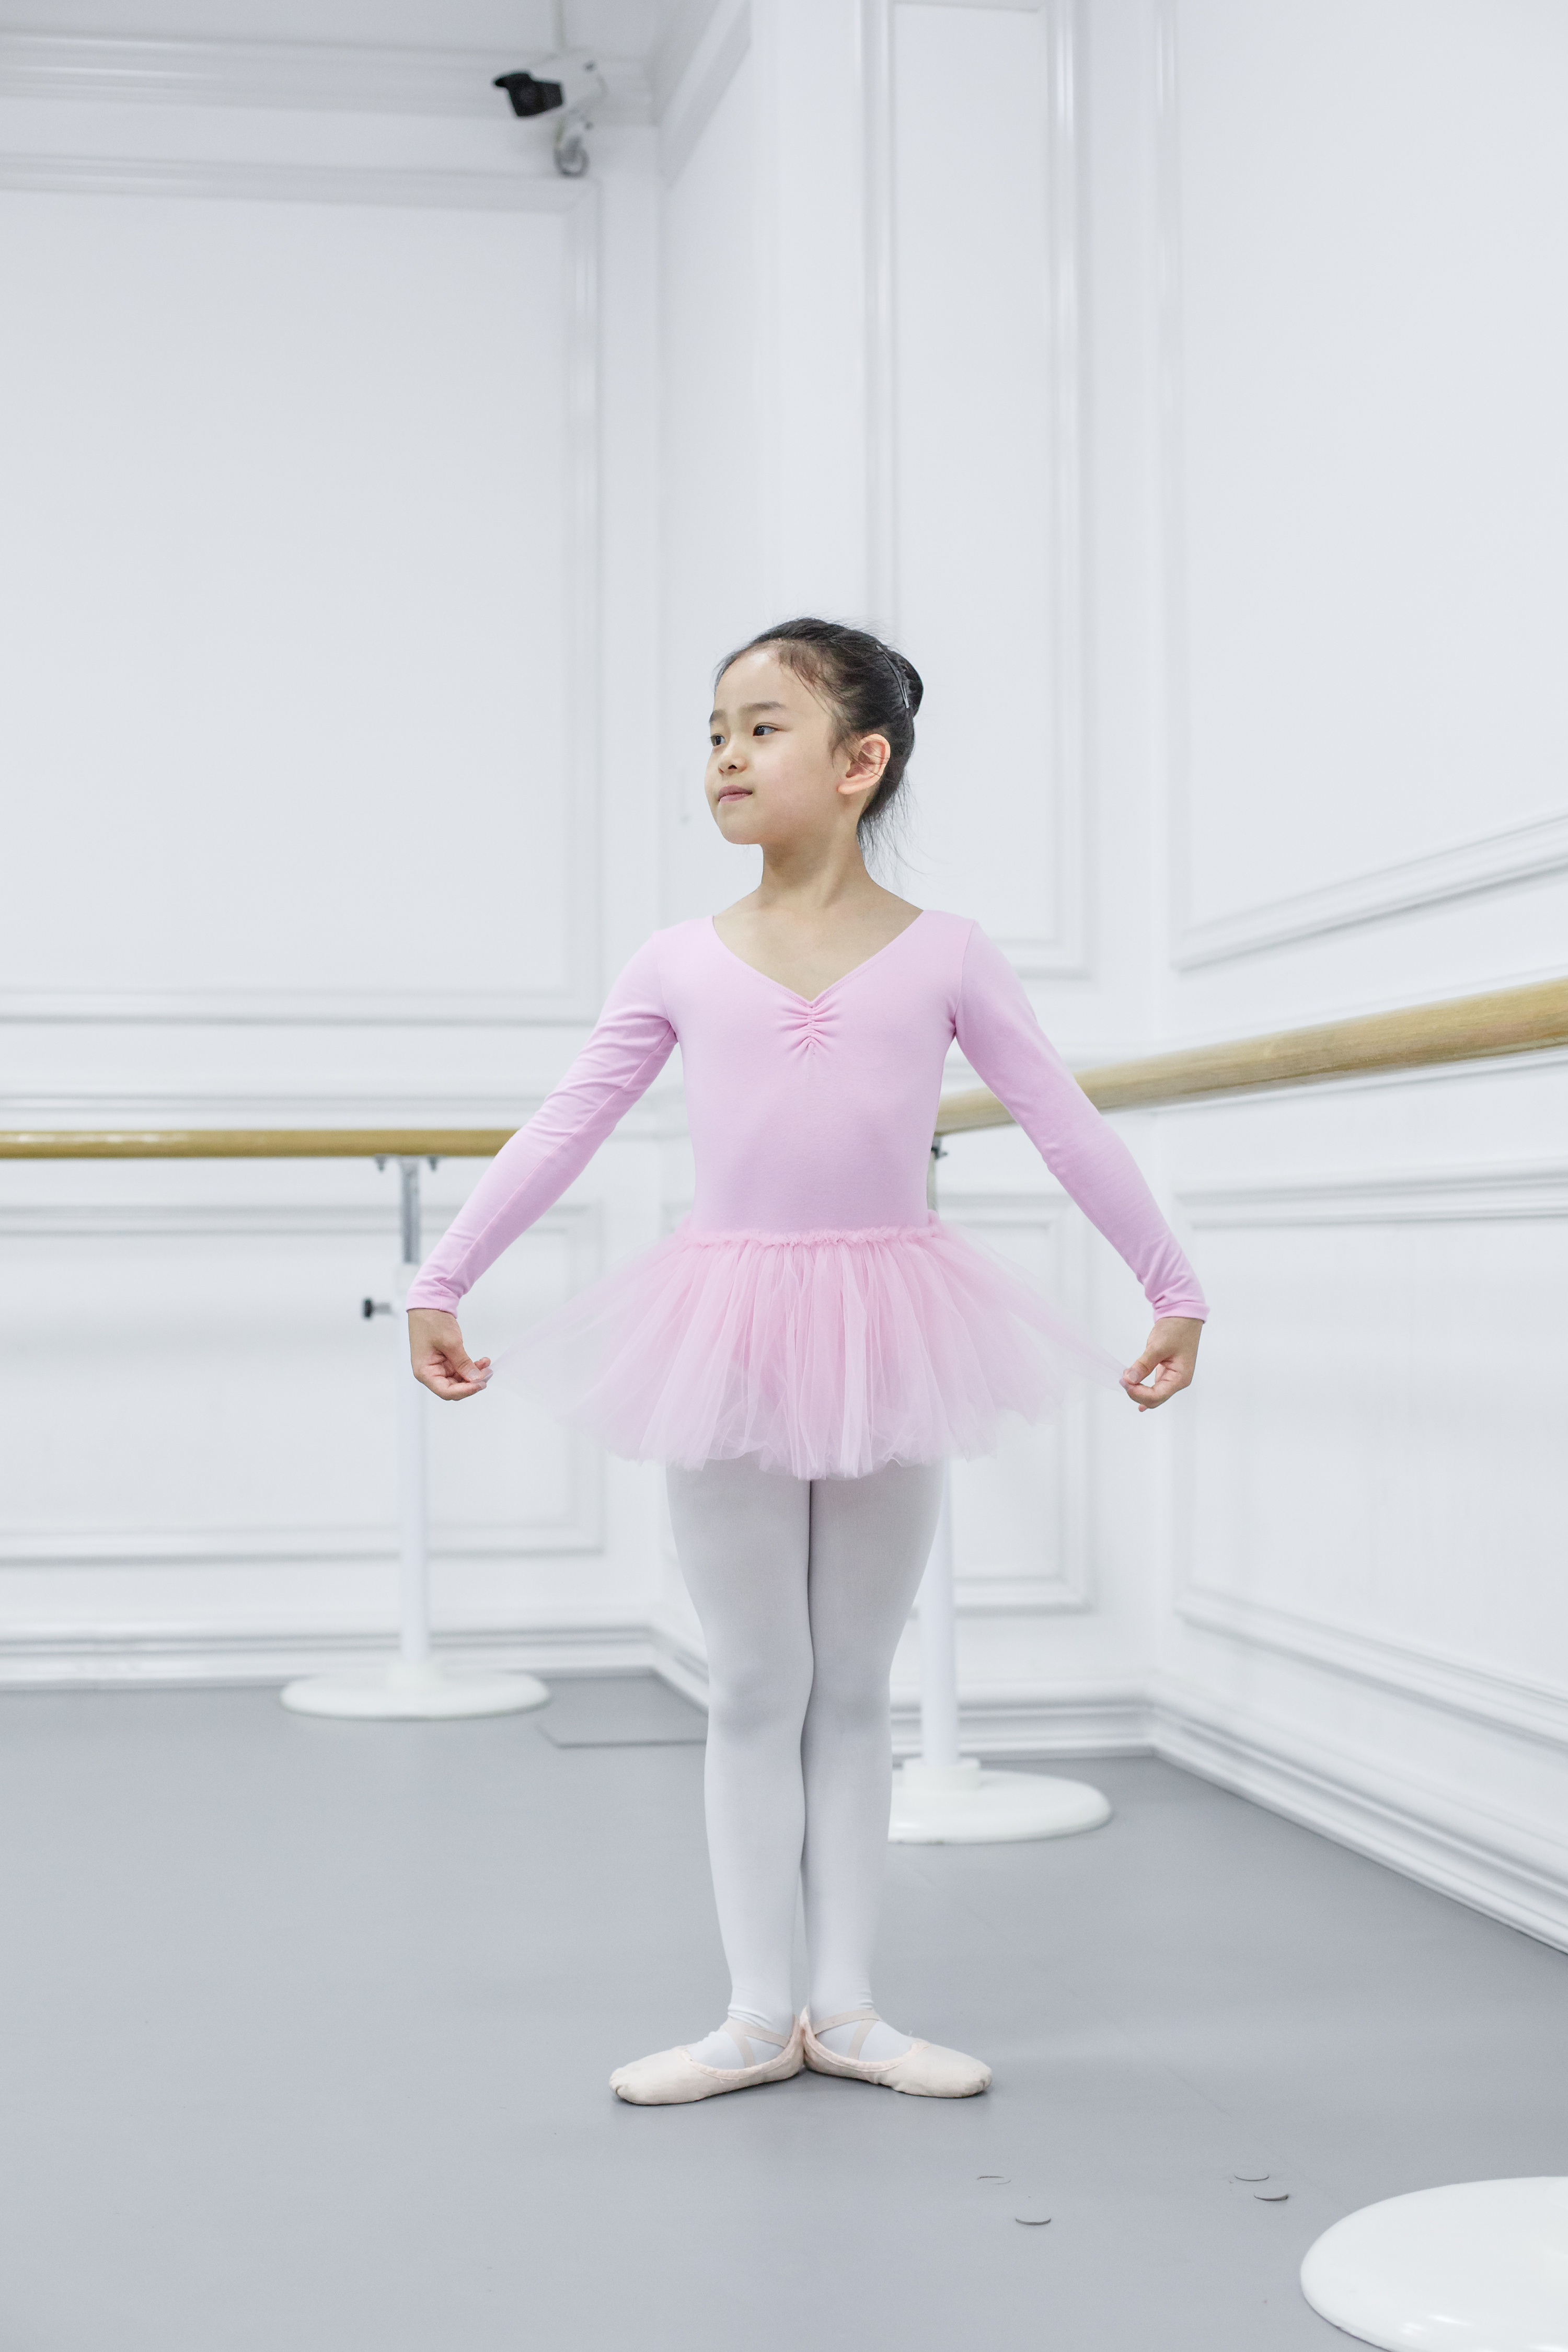 芭蕾舞女孩展示白色丝袜 - 中国丝袜网